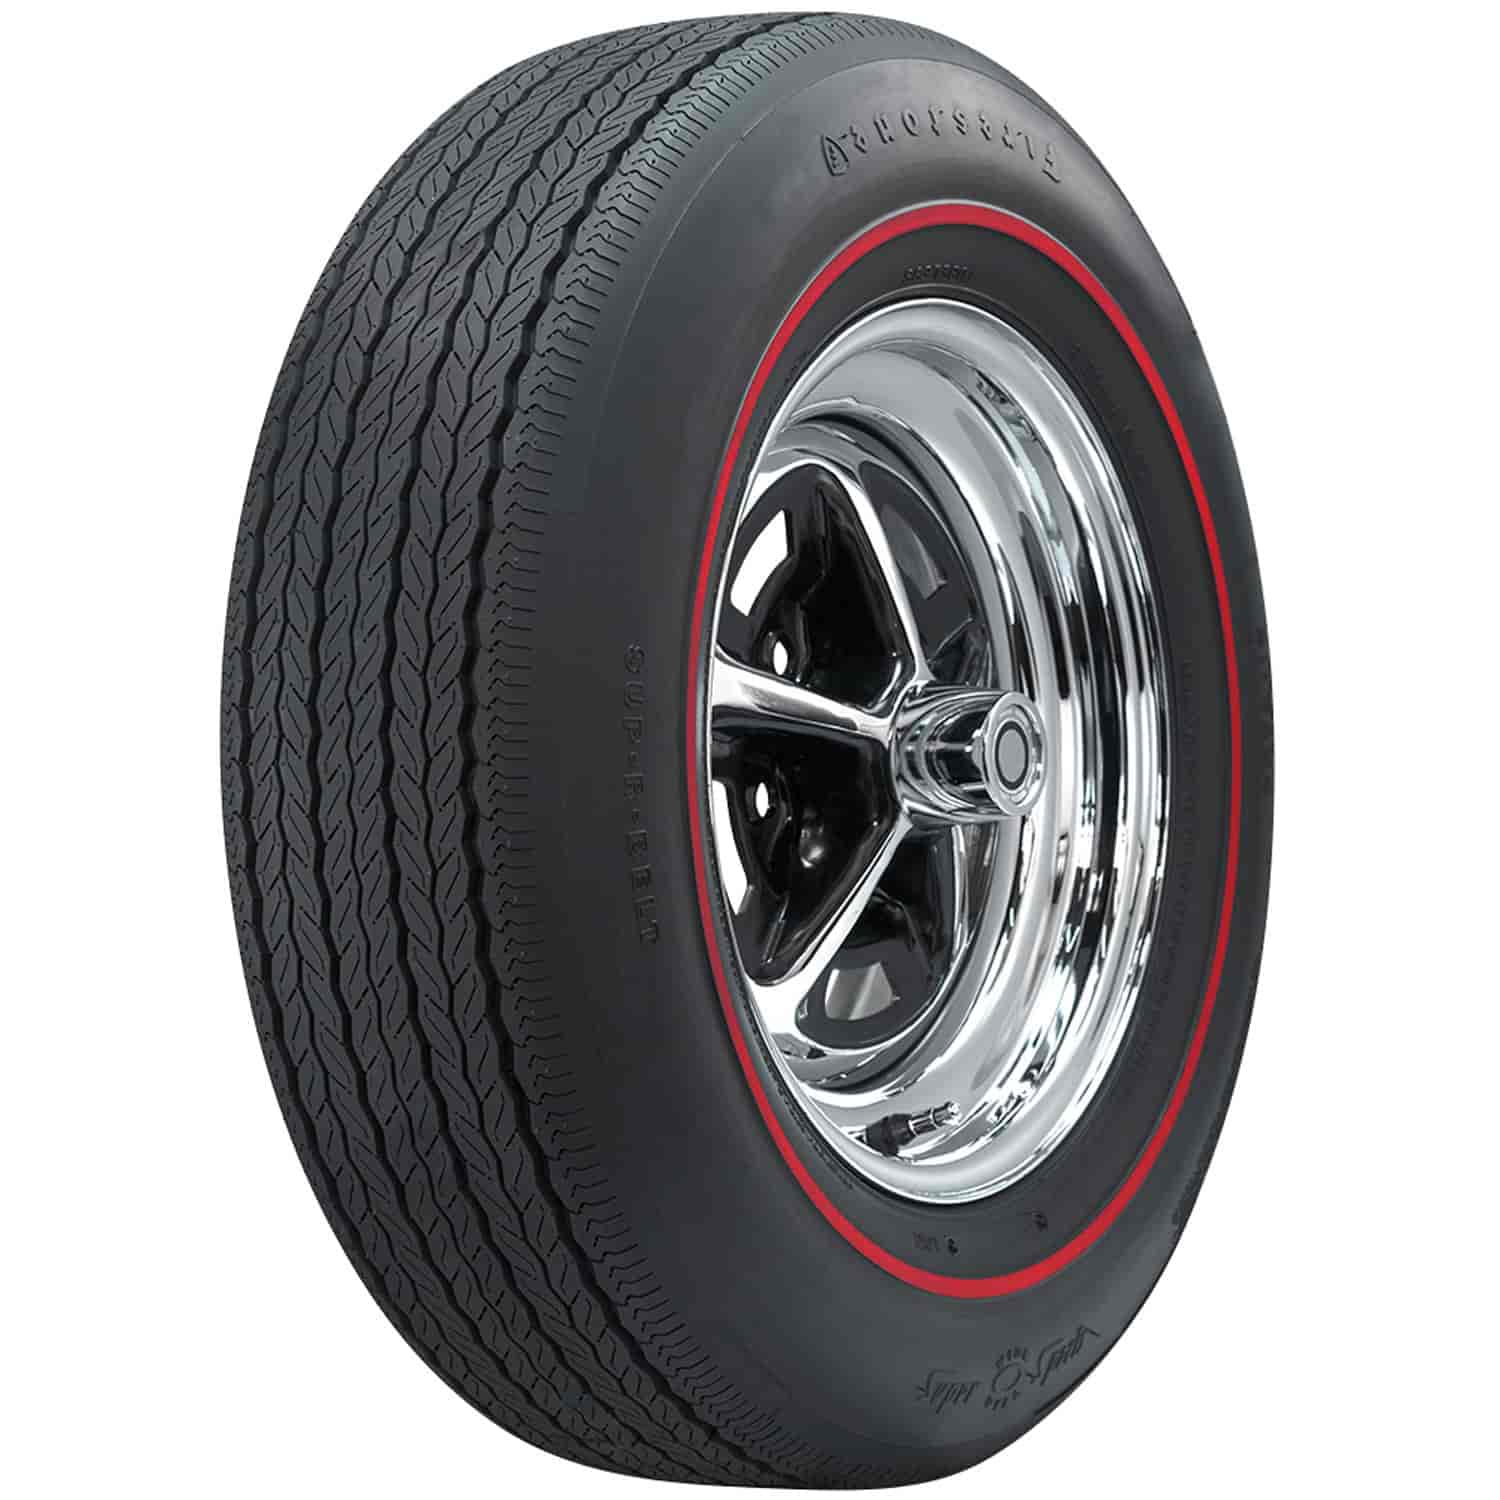 Firestone Wide Oval Radial Tire FR70-14